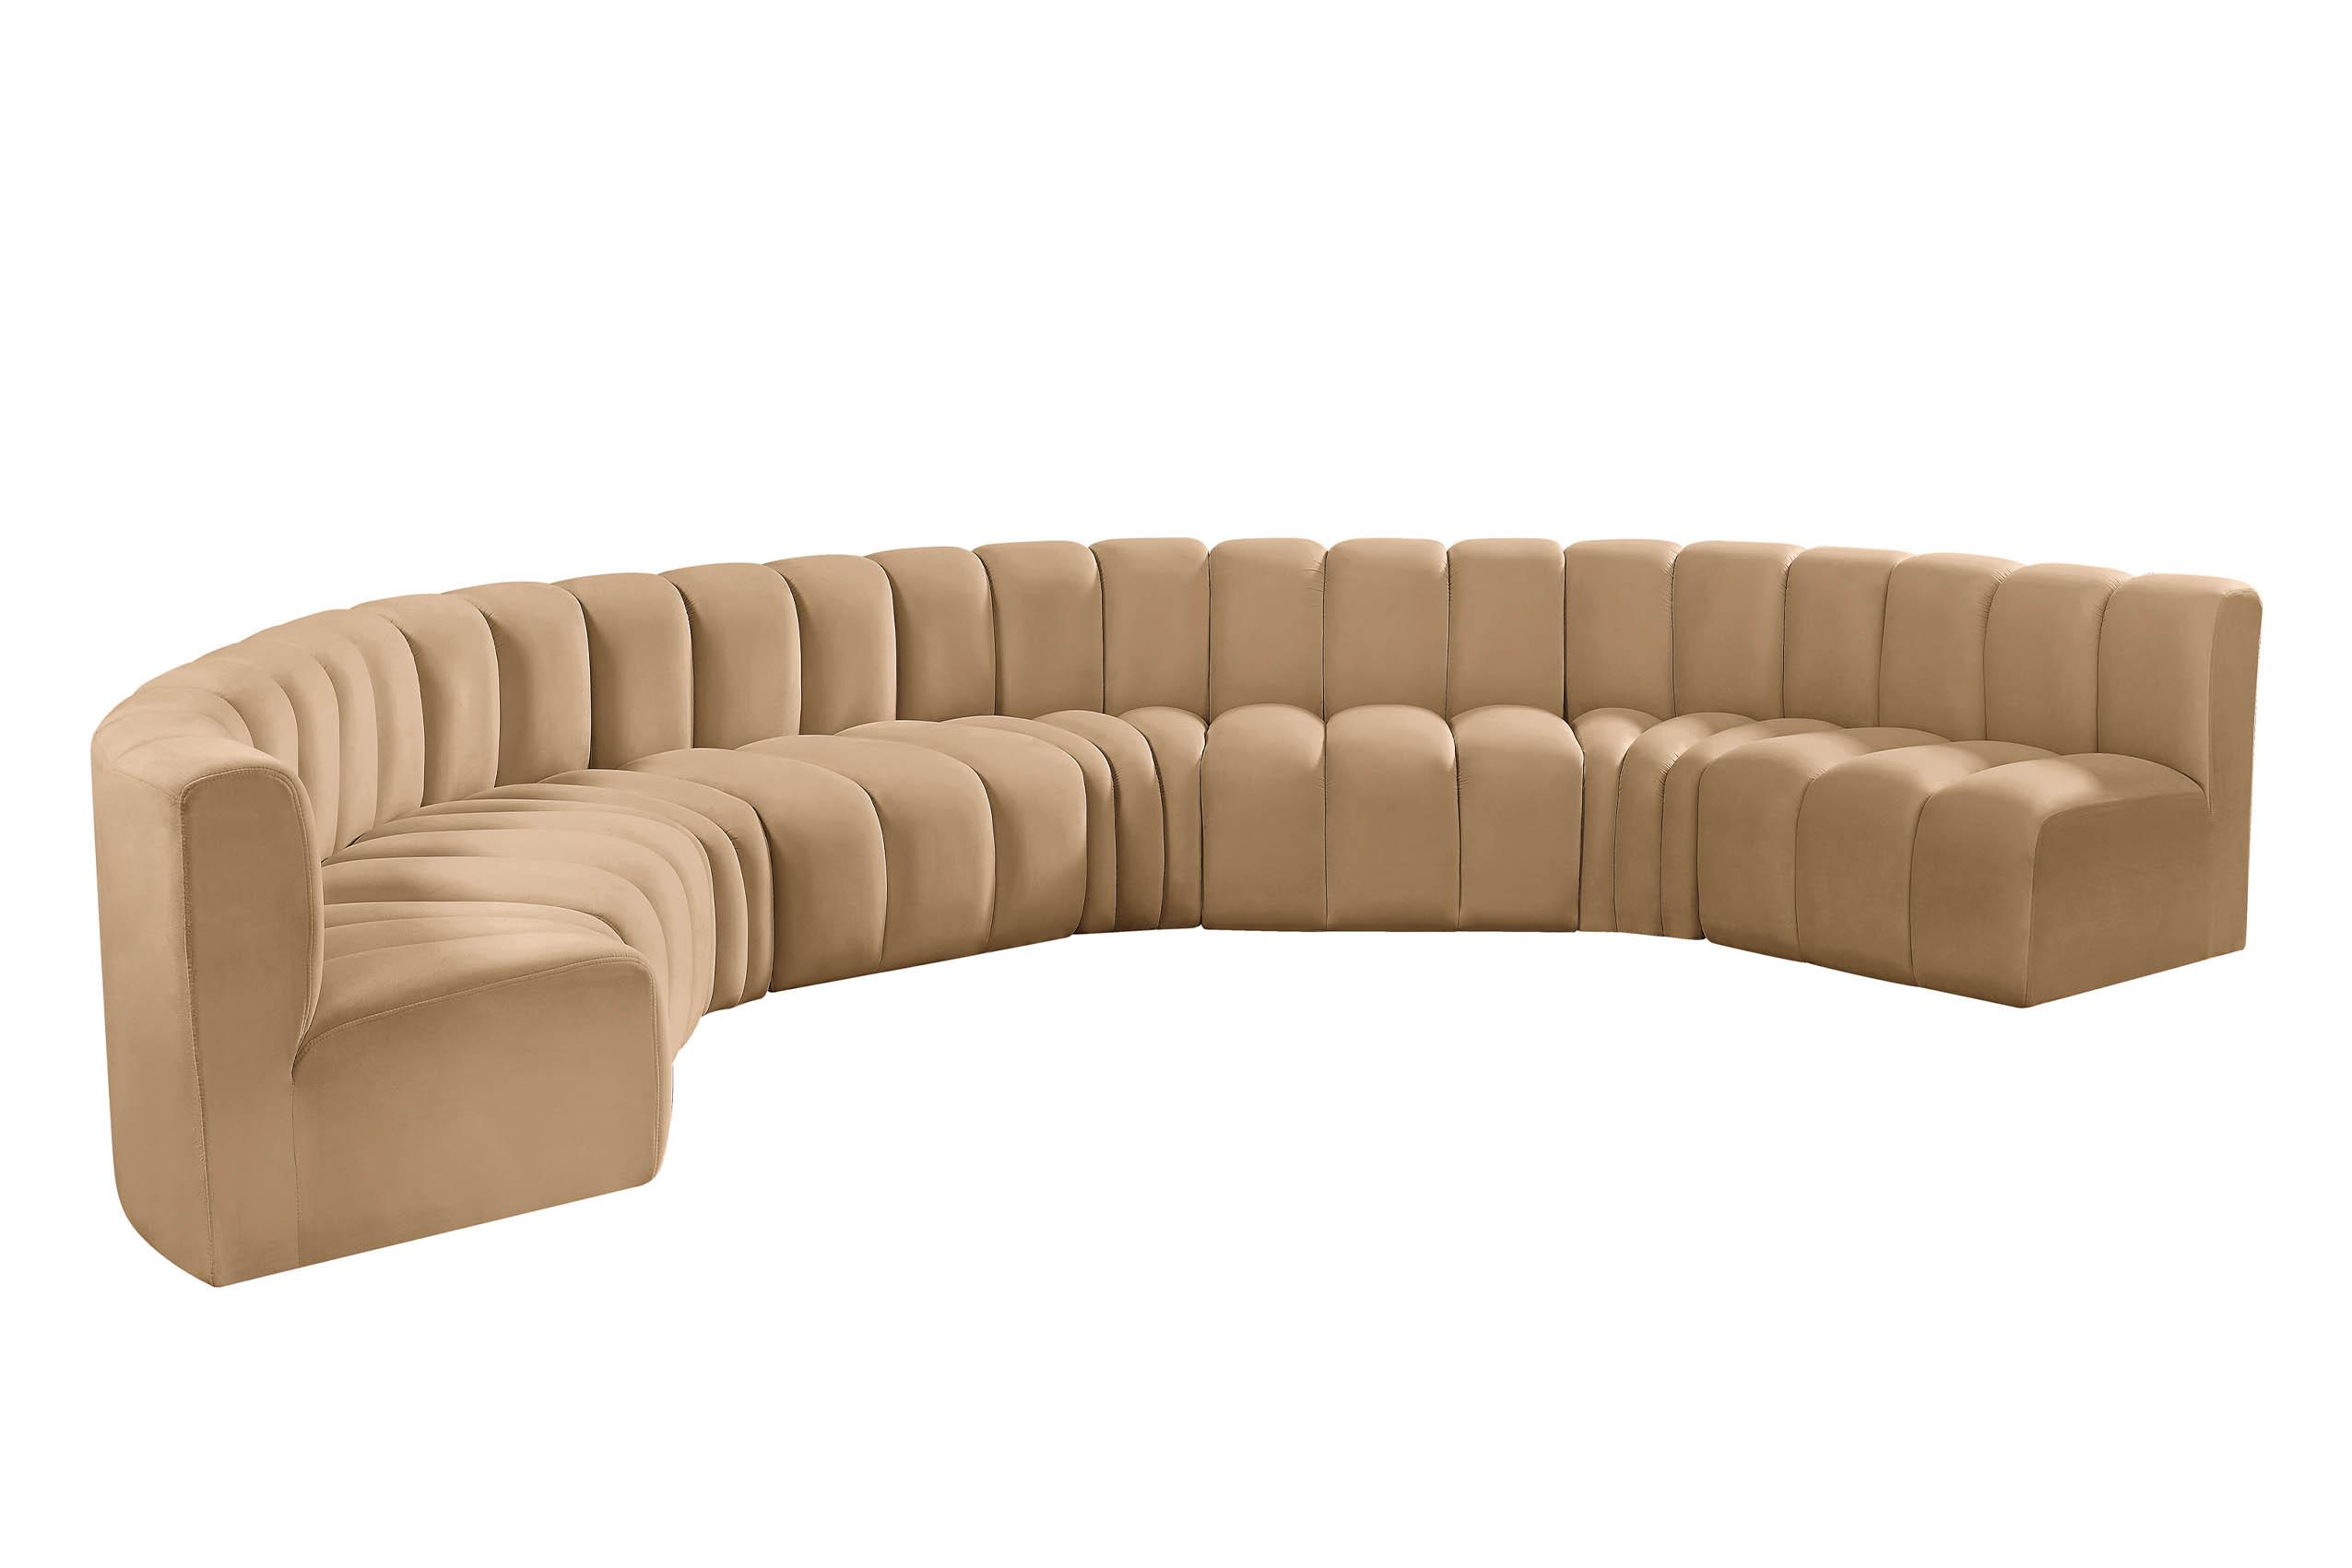 

    
103Camel-S8B Meridian Furniture Modular Sectional Sofa
